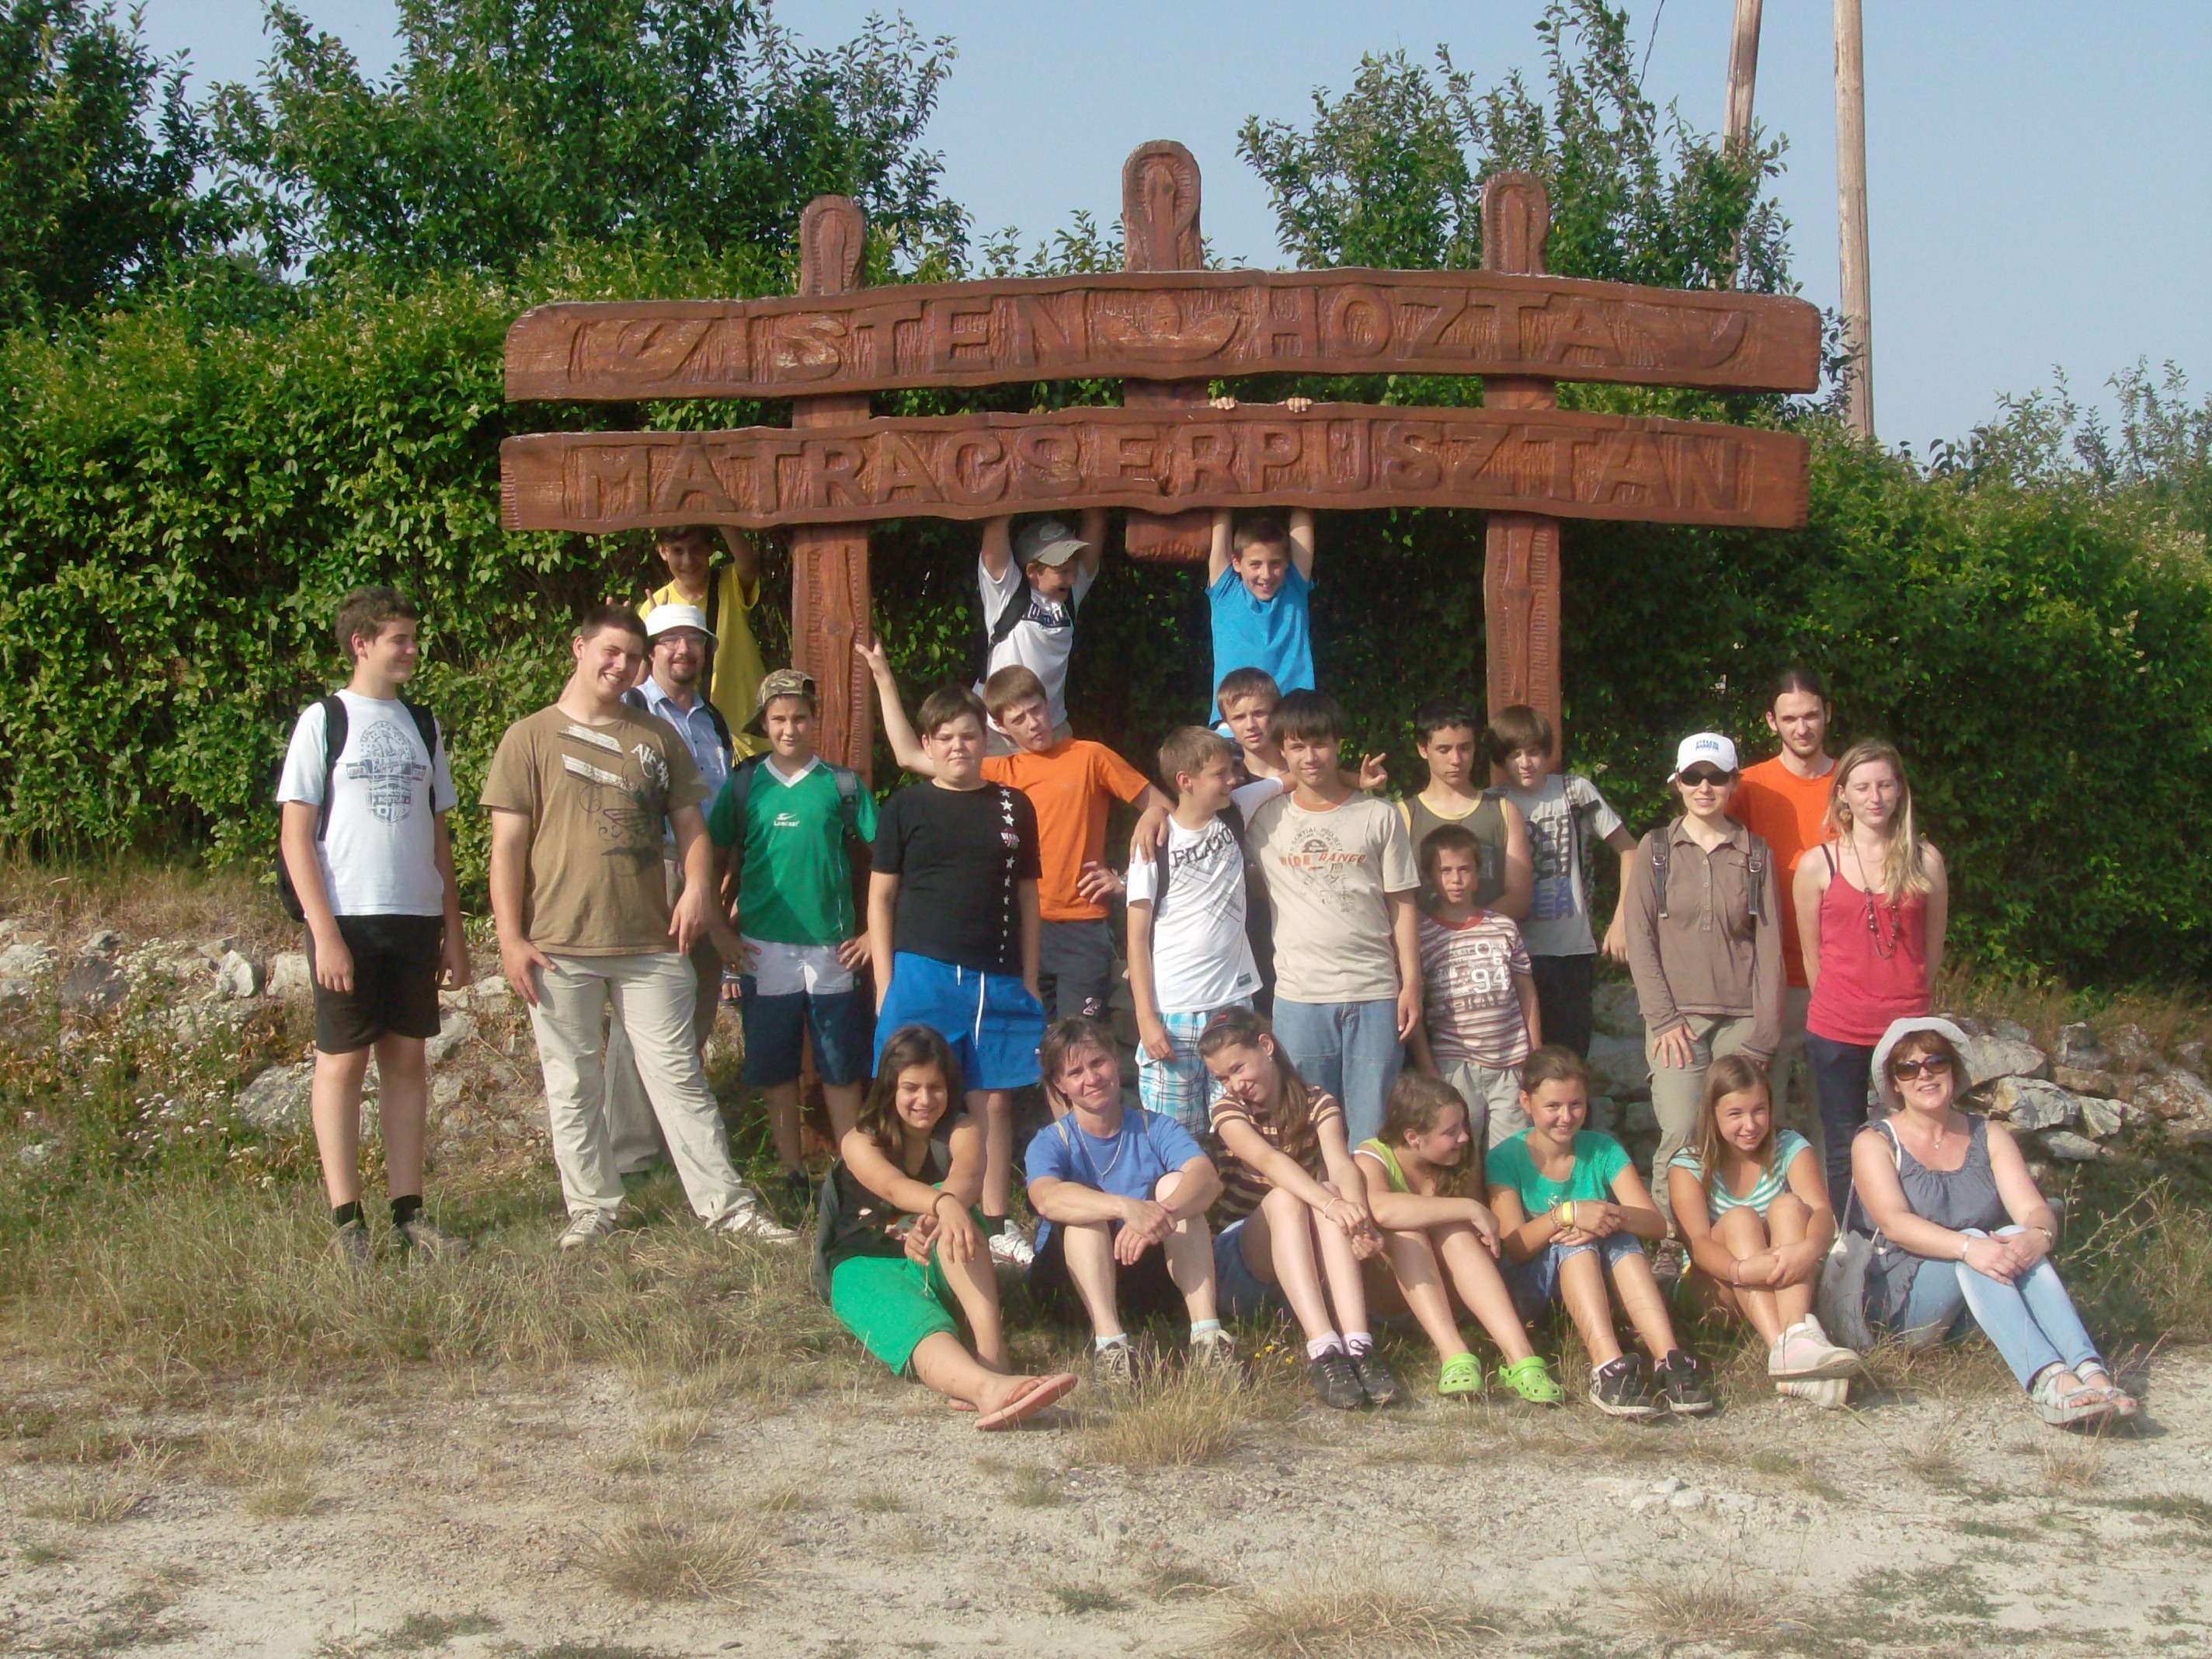 Ifjúsági tábor - Mátranovák 2011.